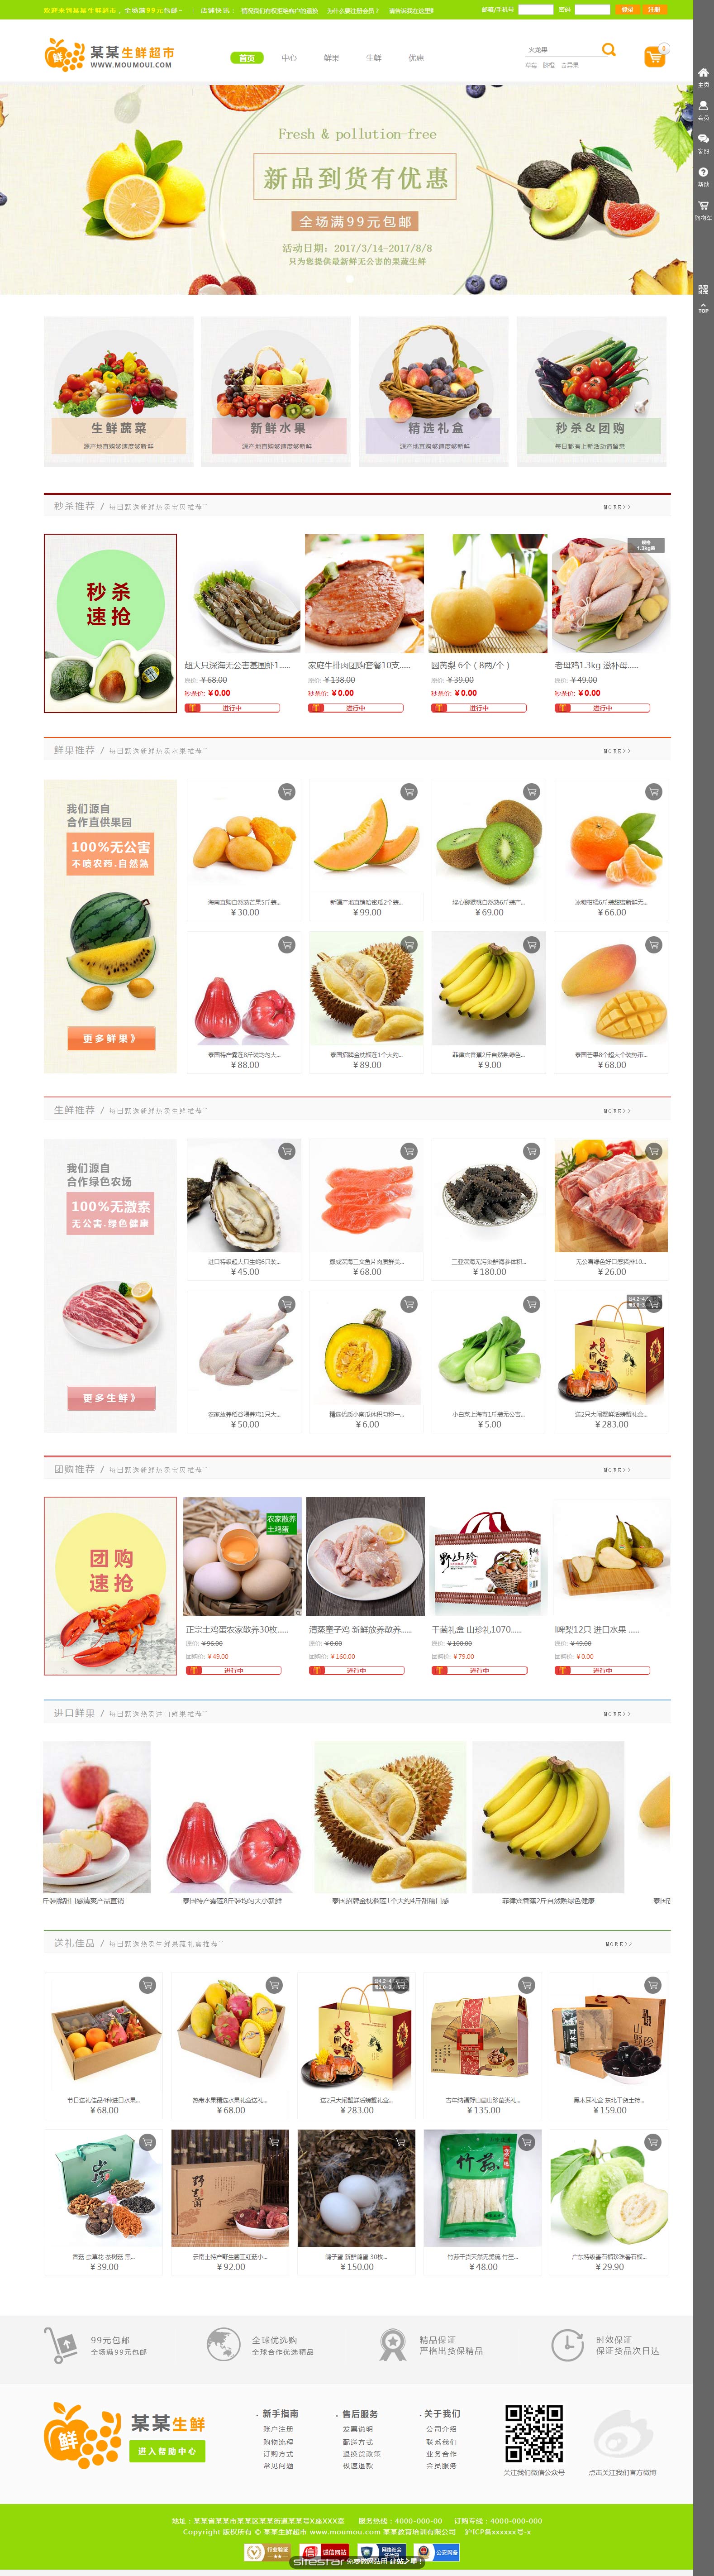 食品网站模板-wd-shops-1293157